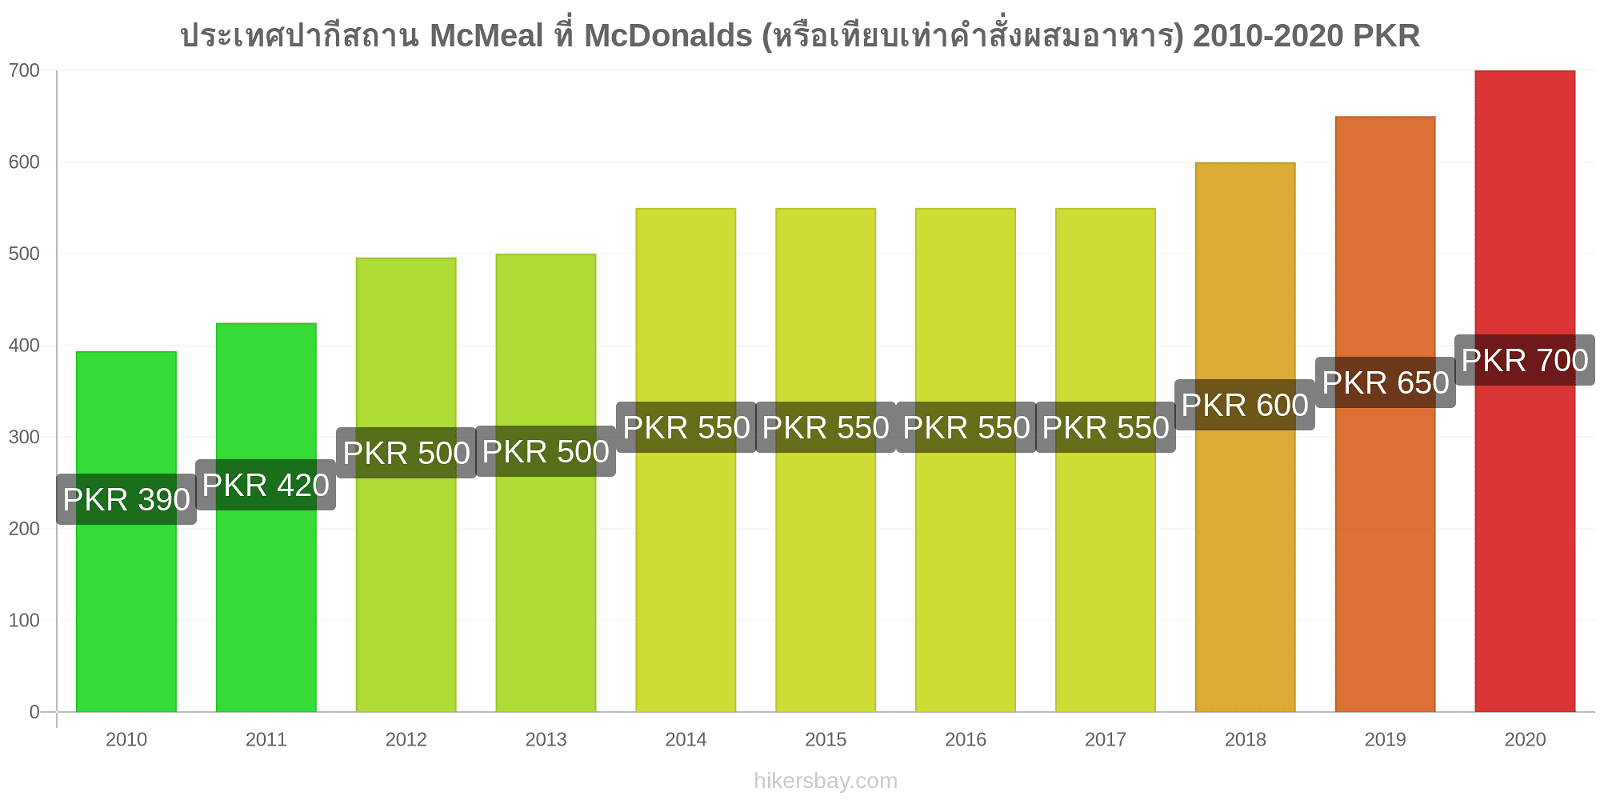 ประเทศปากีสถาน การเปลี่ยนแปลงราคา McMeal ที่ McDonalds (หรือเทียบเท่าคำสั่งผสมอาหาร) hikersbay.com